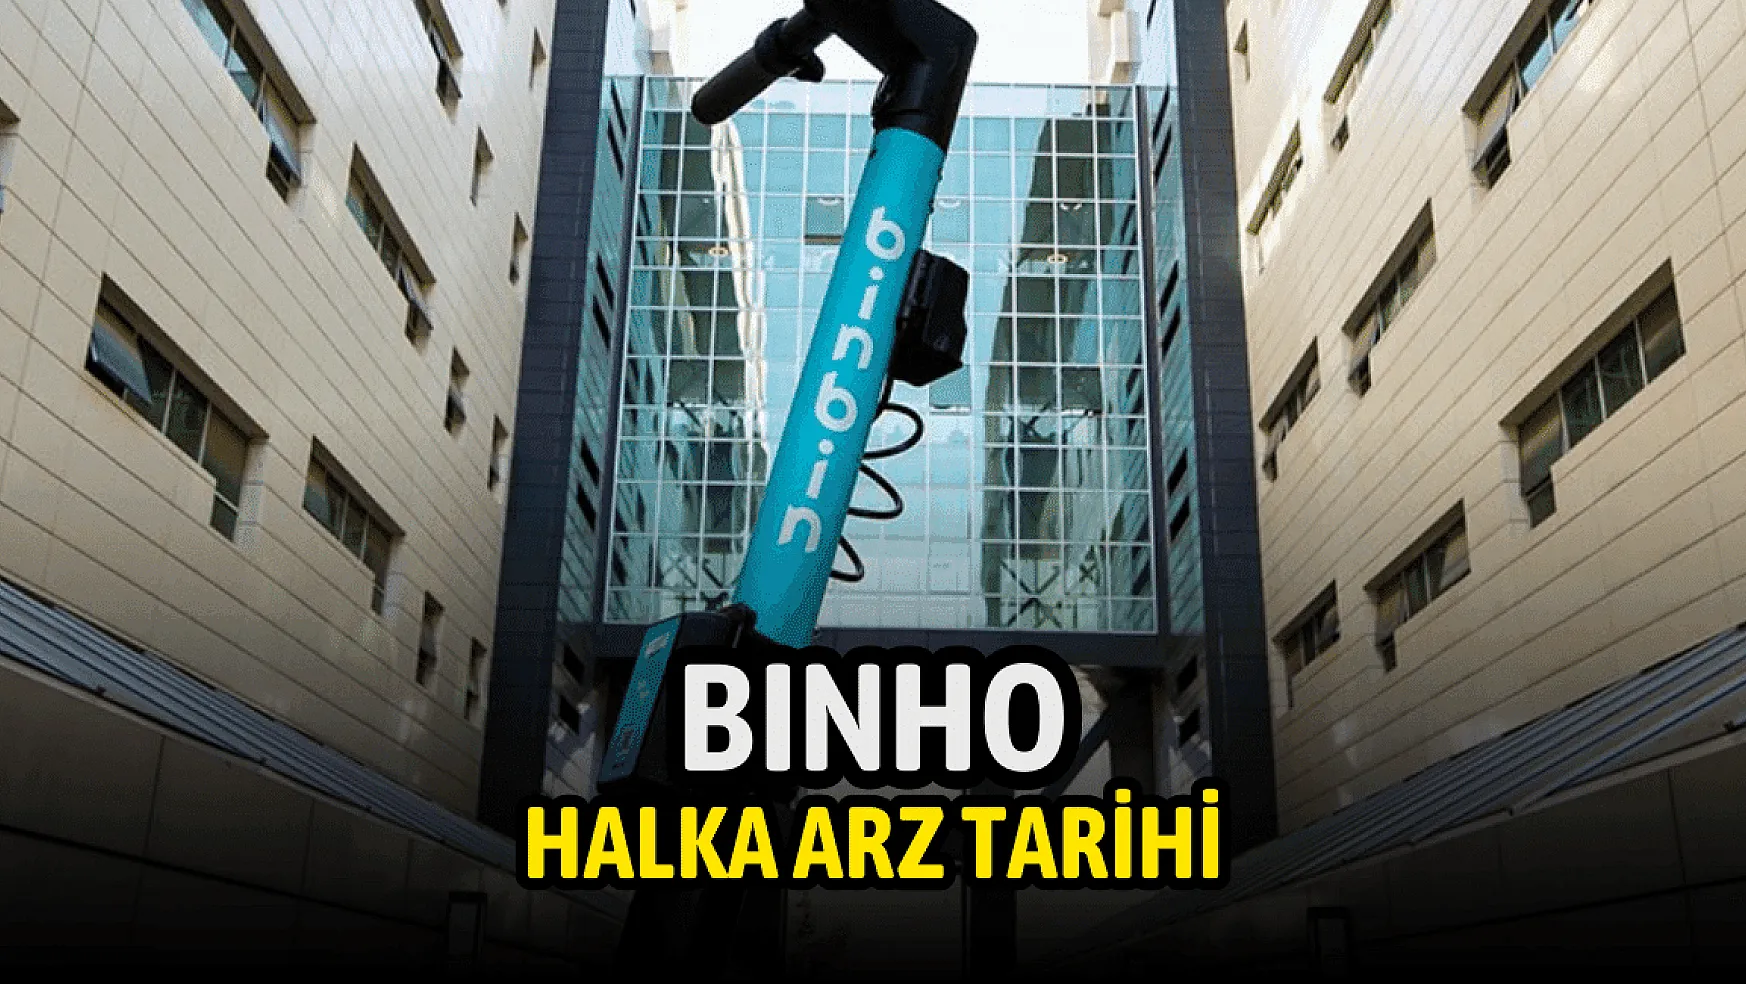 1000 Yatırımlar Holding (BINHO) halka arz tarihi belli oldu